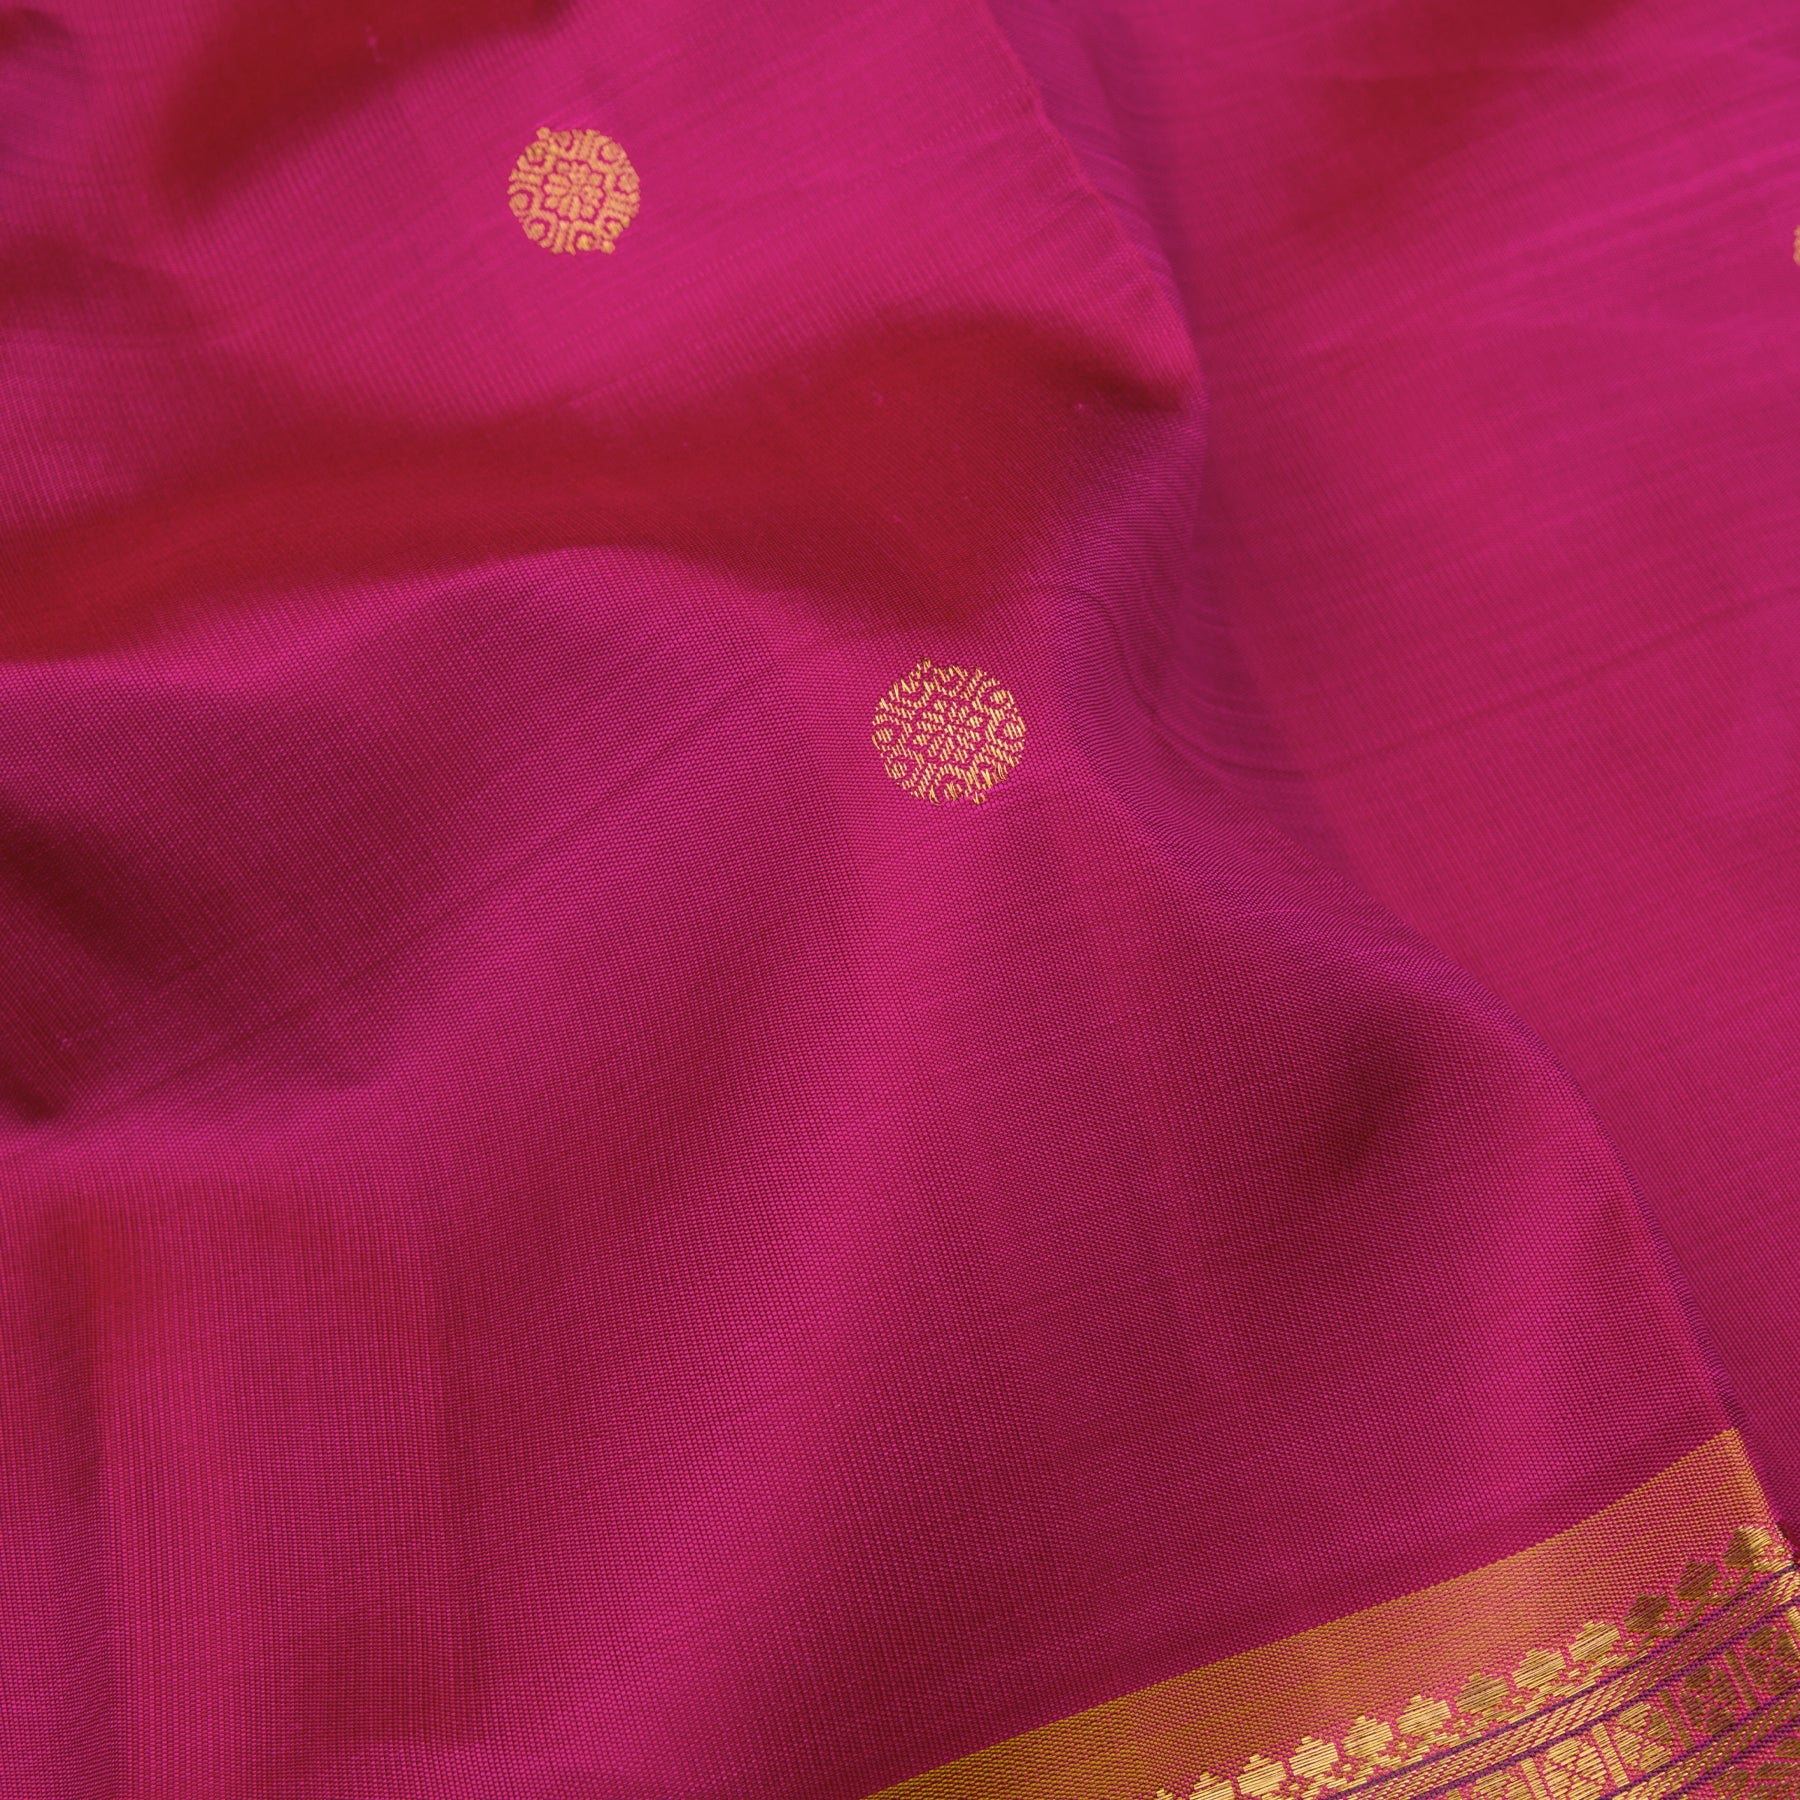 Kanakavalli Kanjivaram Silk Sari 23-110-HS001-10409 - Fabric View